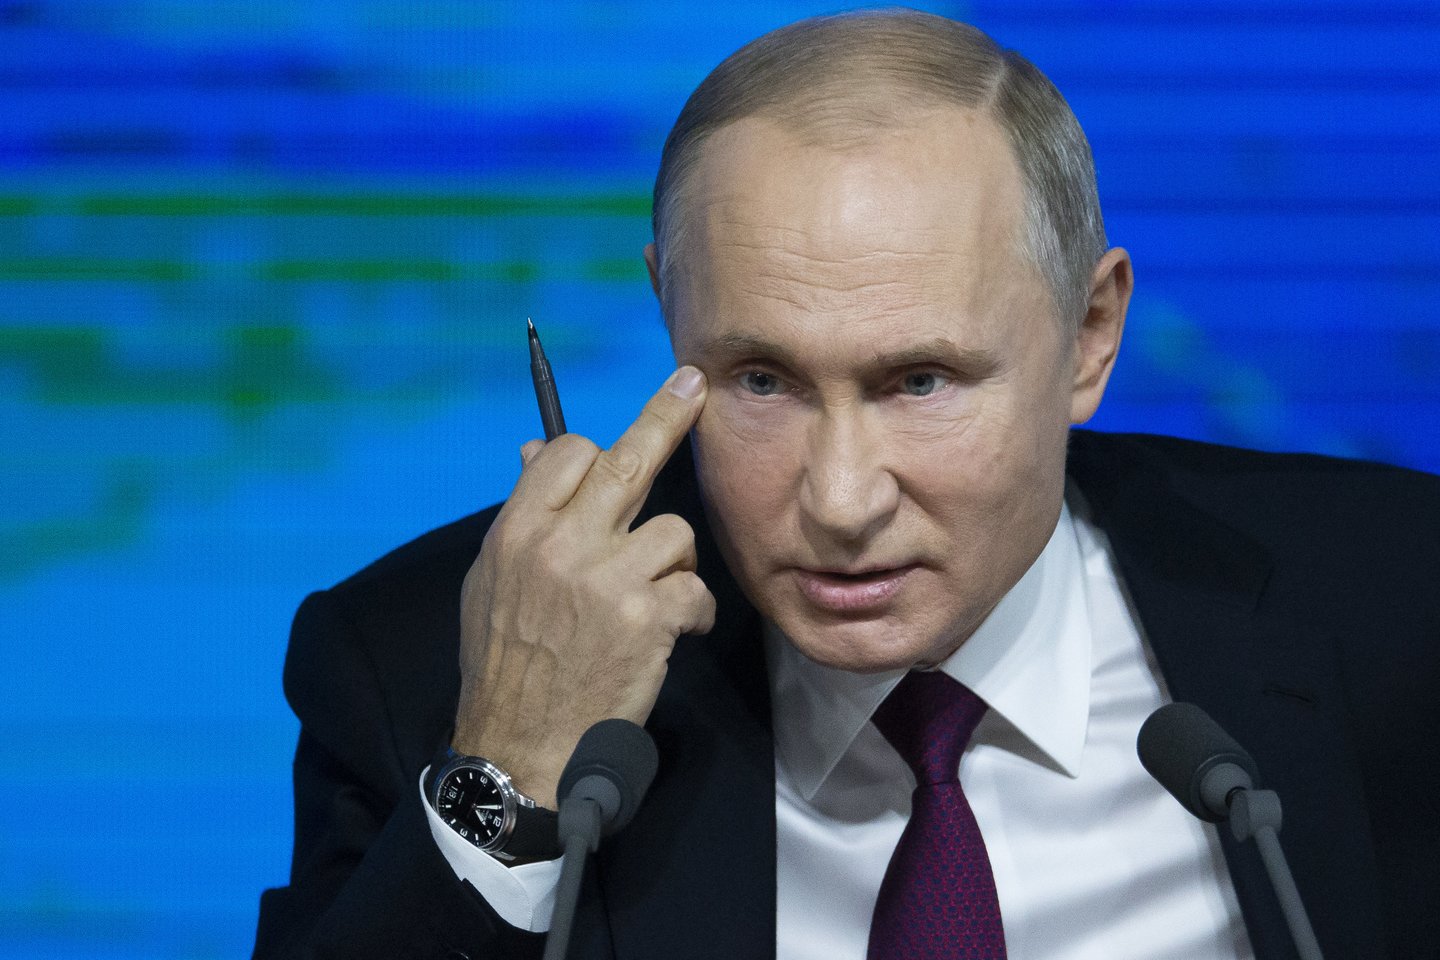  Rusijos prezidentas Vladimiras Putinas pripažino, kad Rusijoje egzistuoja dopingo problema<br> AP nuotr.